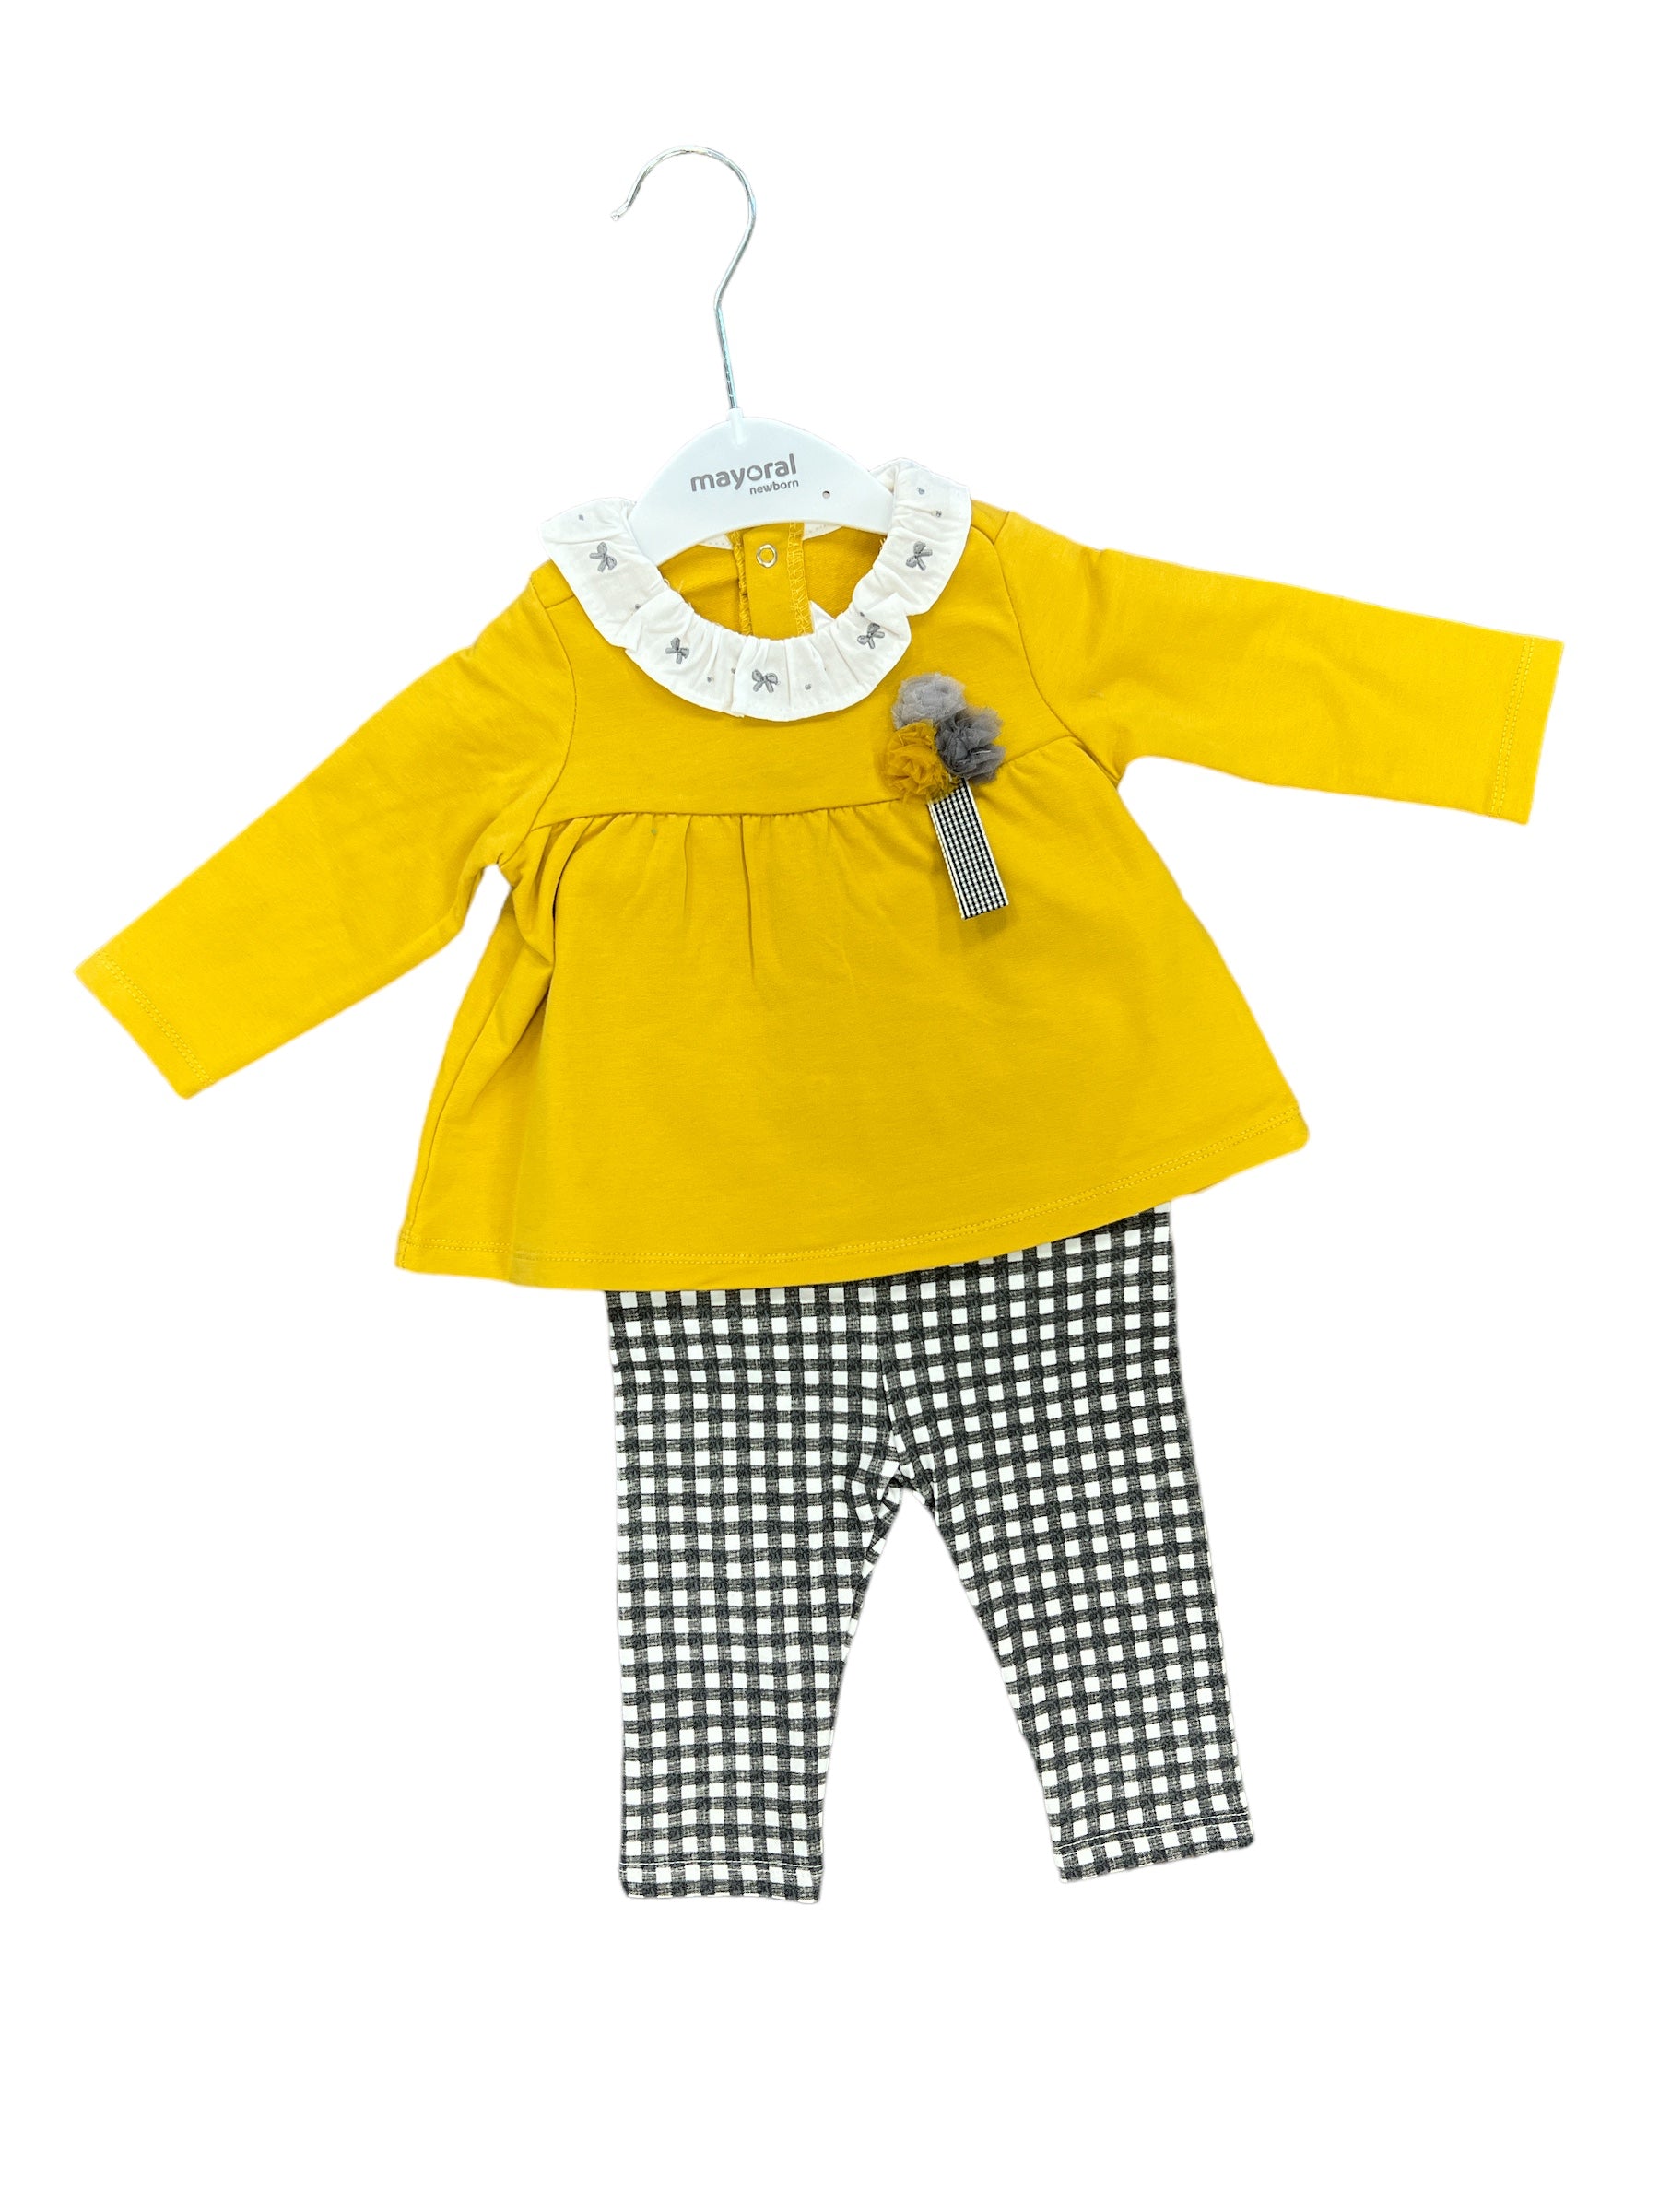 Mustard Peplum Set-520 Baby & Kids Gifts-Simply Stylish Boutique-Simply Stylish Boutique | Women’s & Kid’s Fashion | Paducah, KY